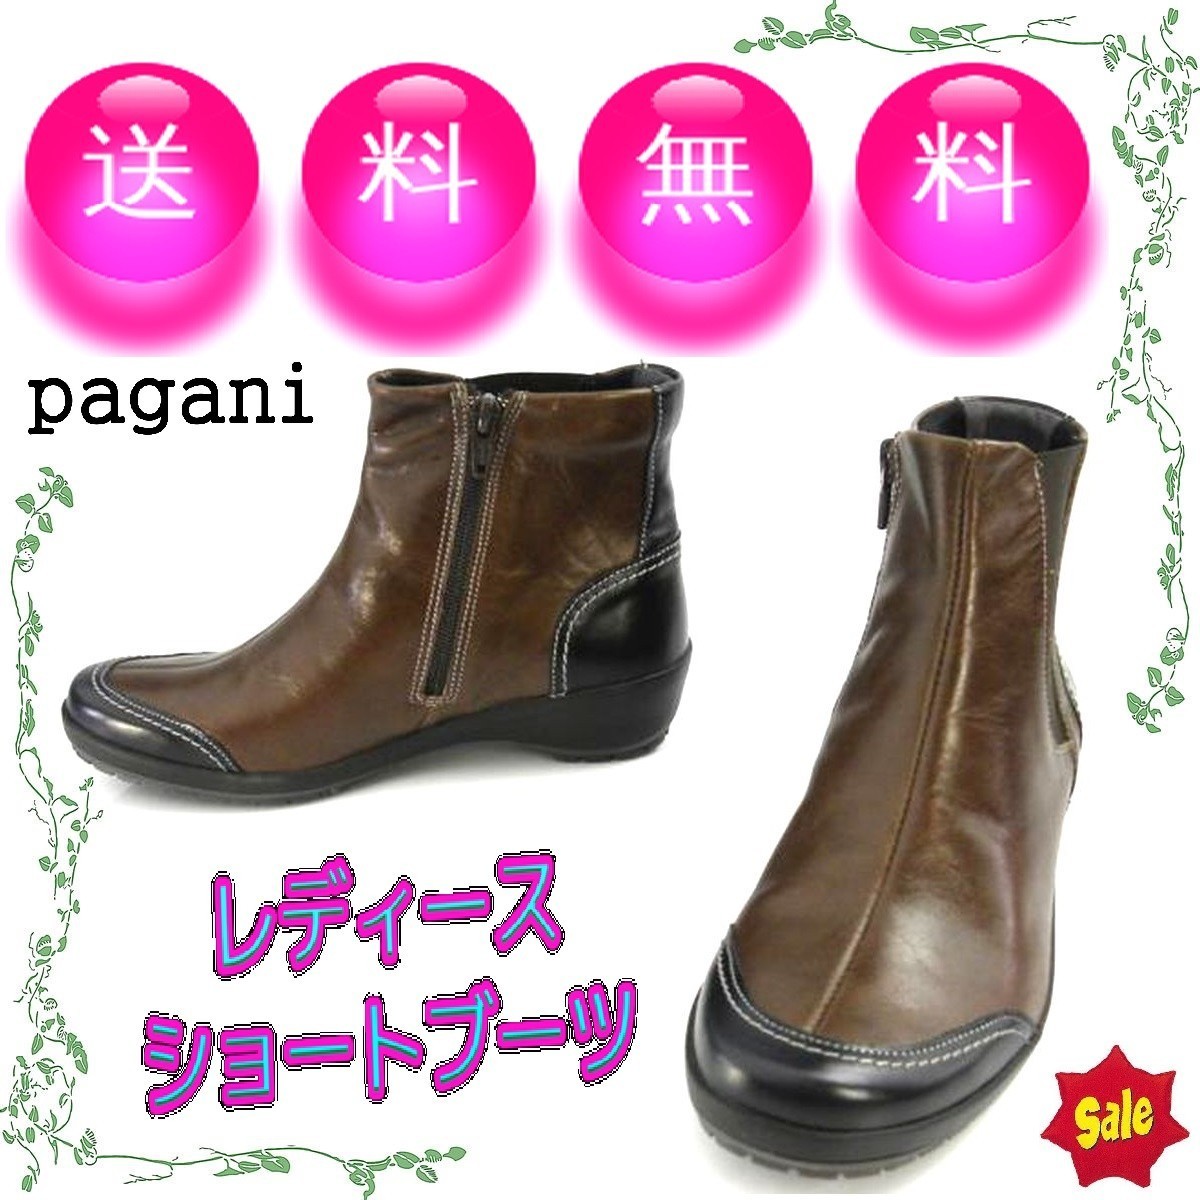 本革レディースショートブーツ サイドゴアブーツ 大塚製靴 pagani パガーニ 本州送料無料 36/23cm 茶 S4867